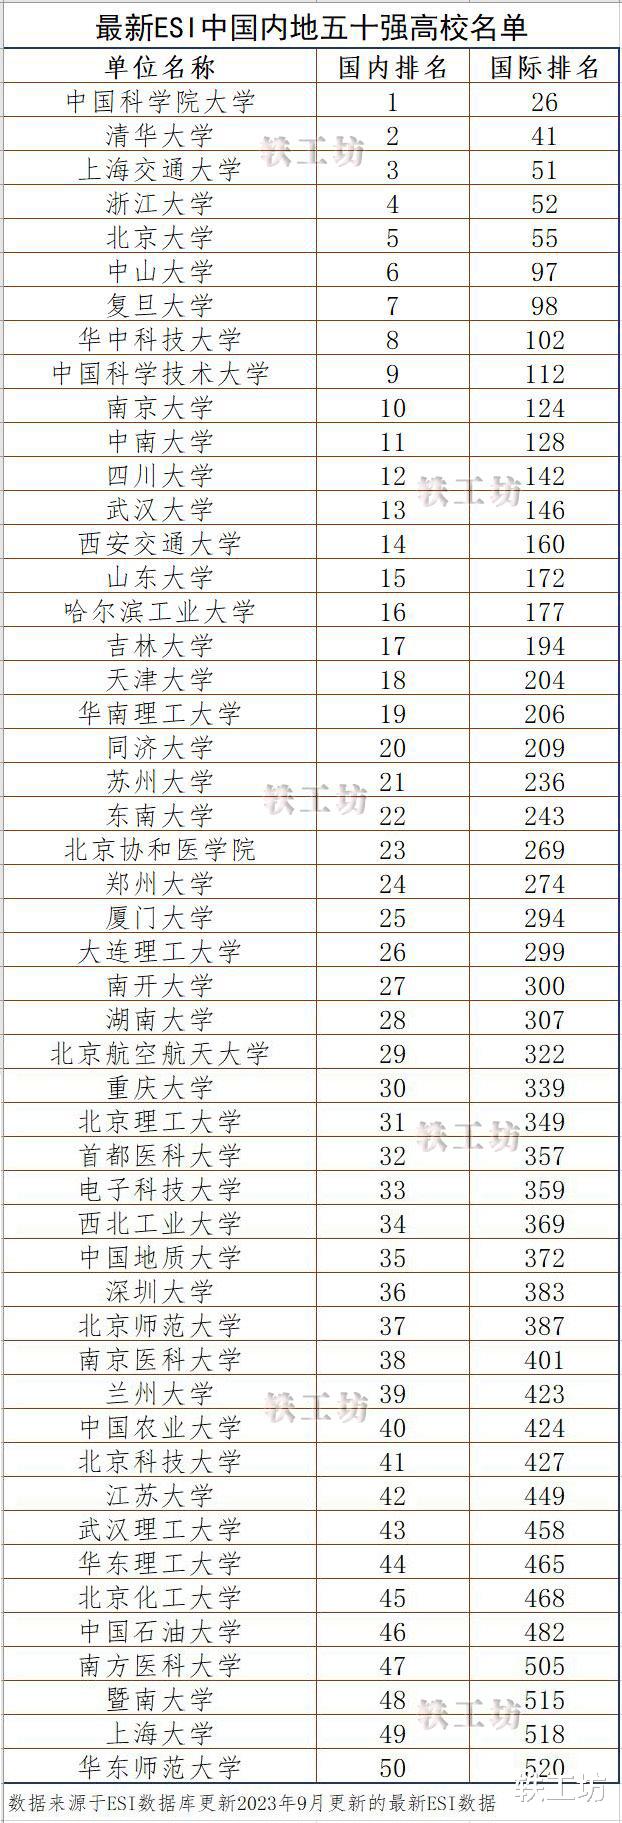 新一期“中国内地五十强高校名单”出炉, 清华第2, 北大第5